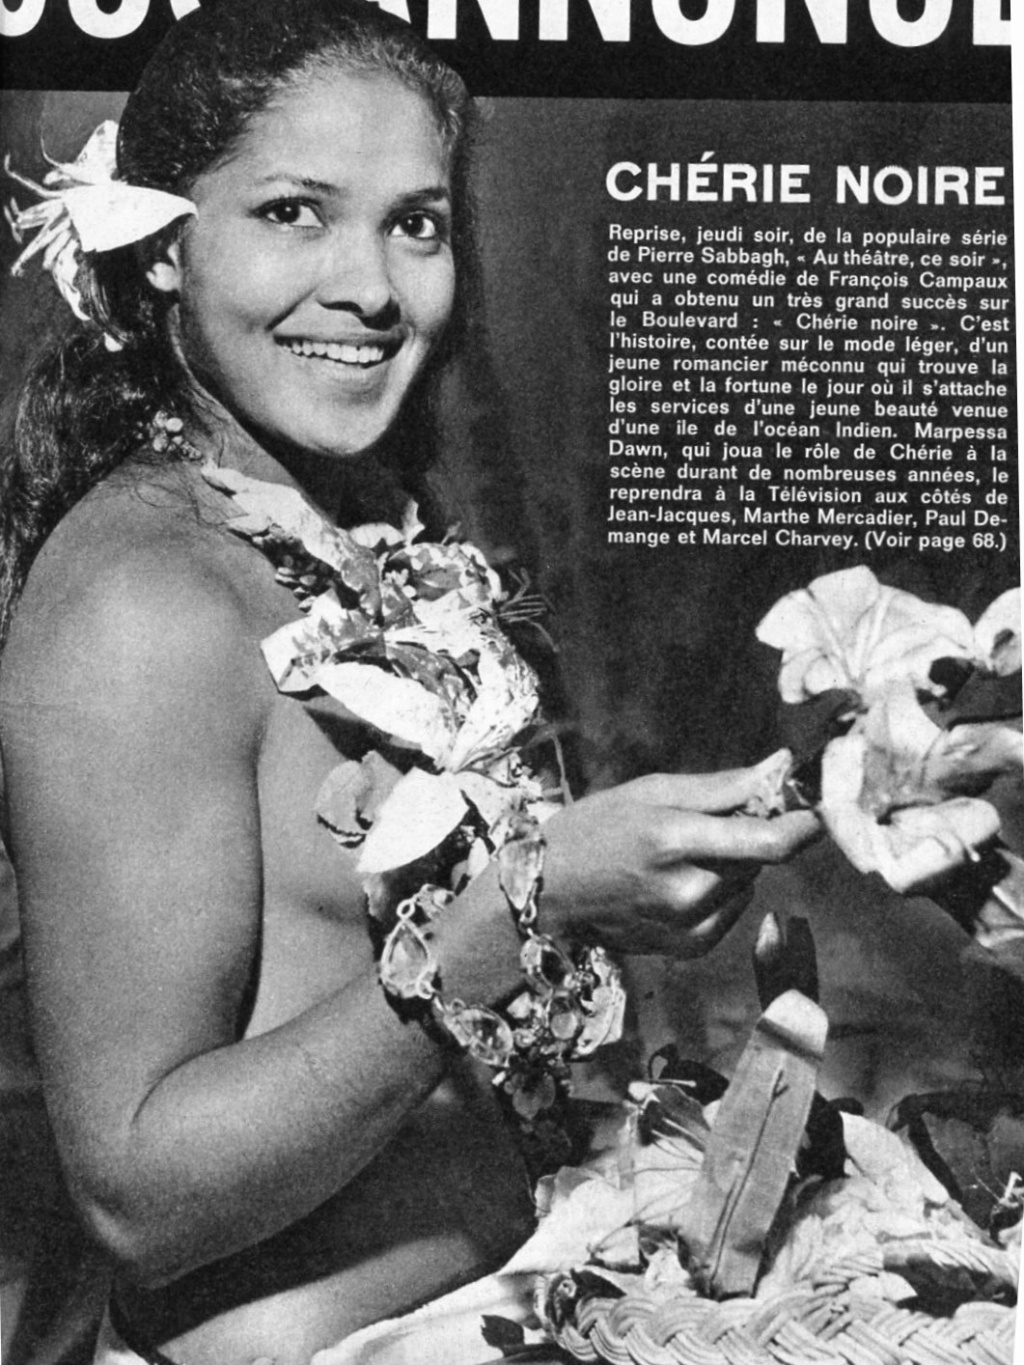 octobre - 27 octobre 1966: Au théâtre ce soir - CHÉRIE NOIRE 0_le_p15